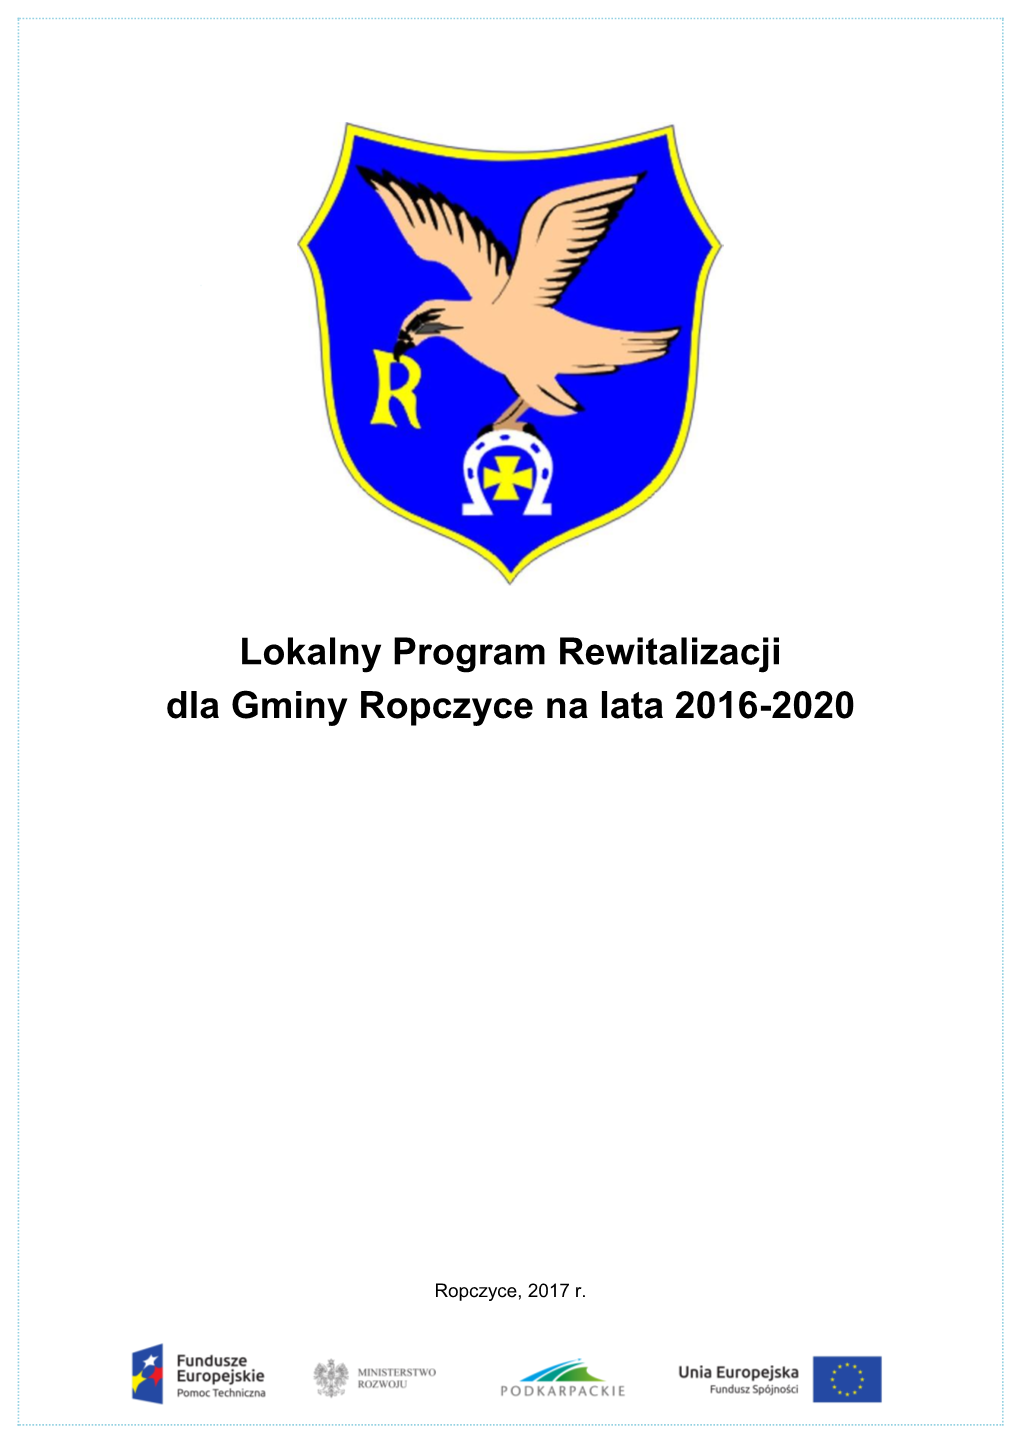 Lokalny Program Rewitalizacji Dla Gminy Ropczyce Na Lata 2016-2020